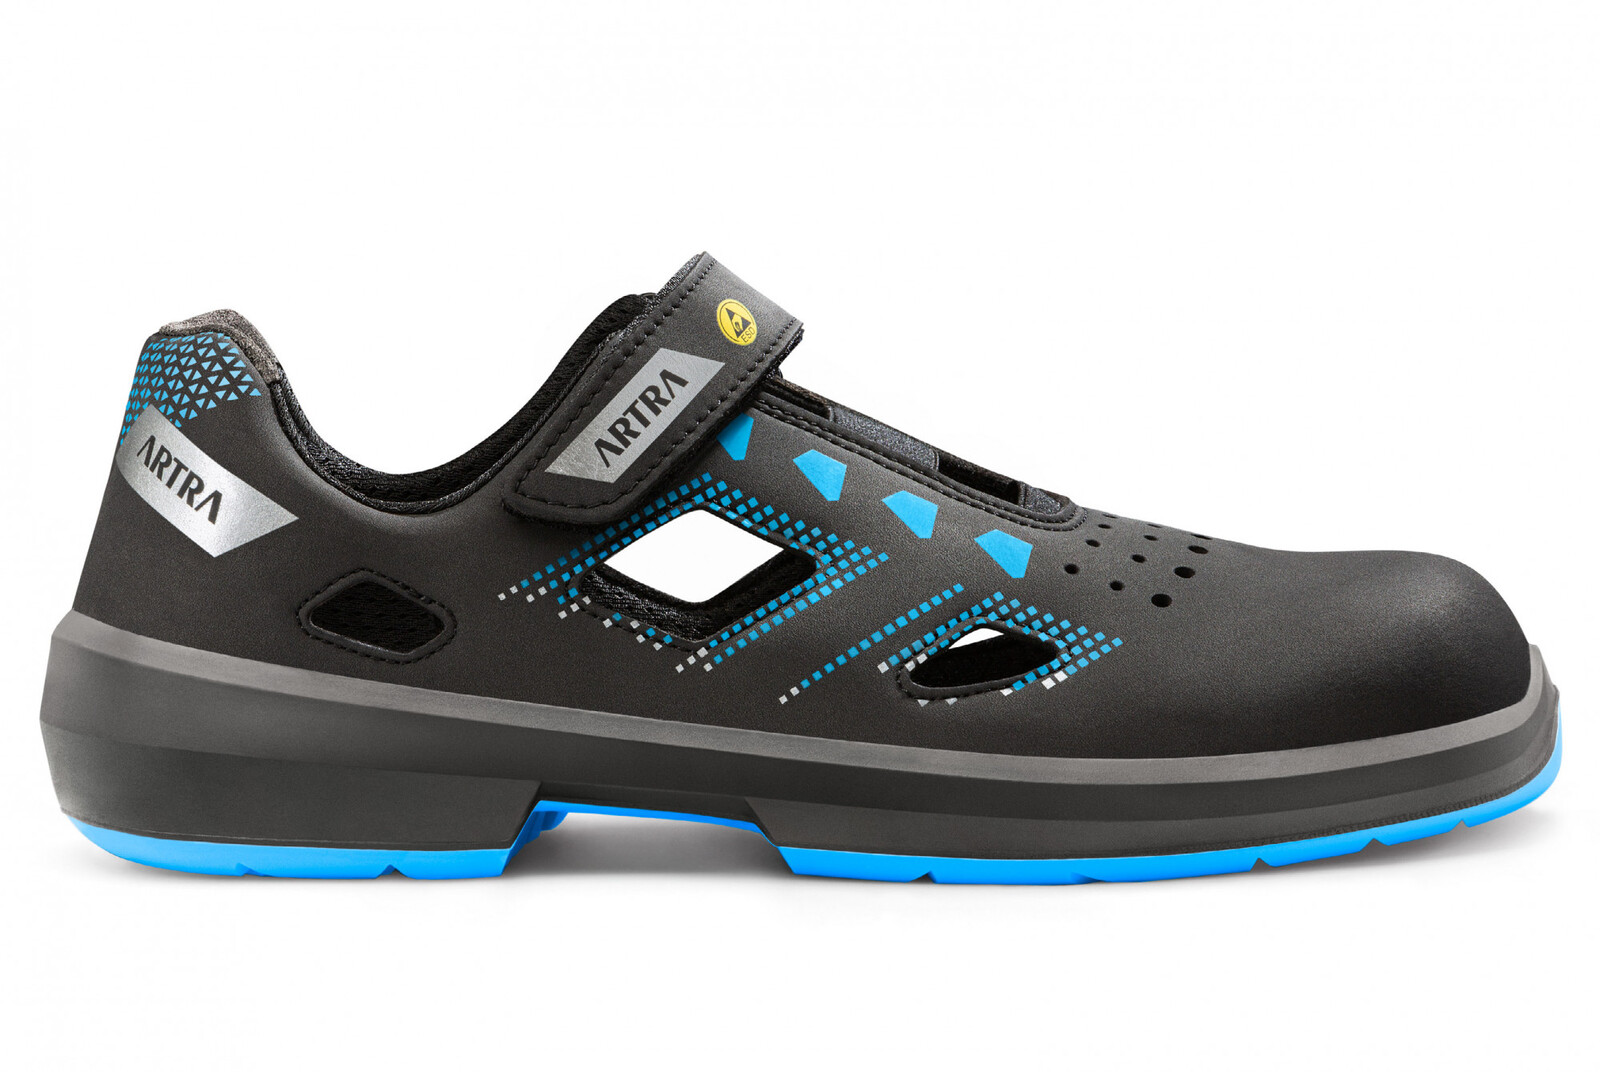 Bezpečnostné sandále Artra Arzo 805 619090 S1P SRC ESD MF - veľkosť: 43, farba: čierna/modrá